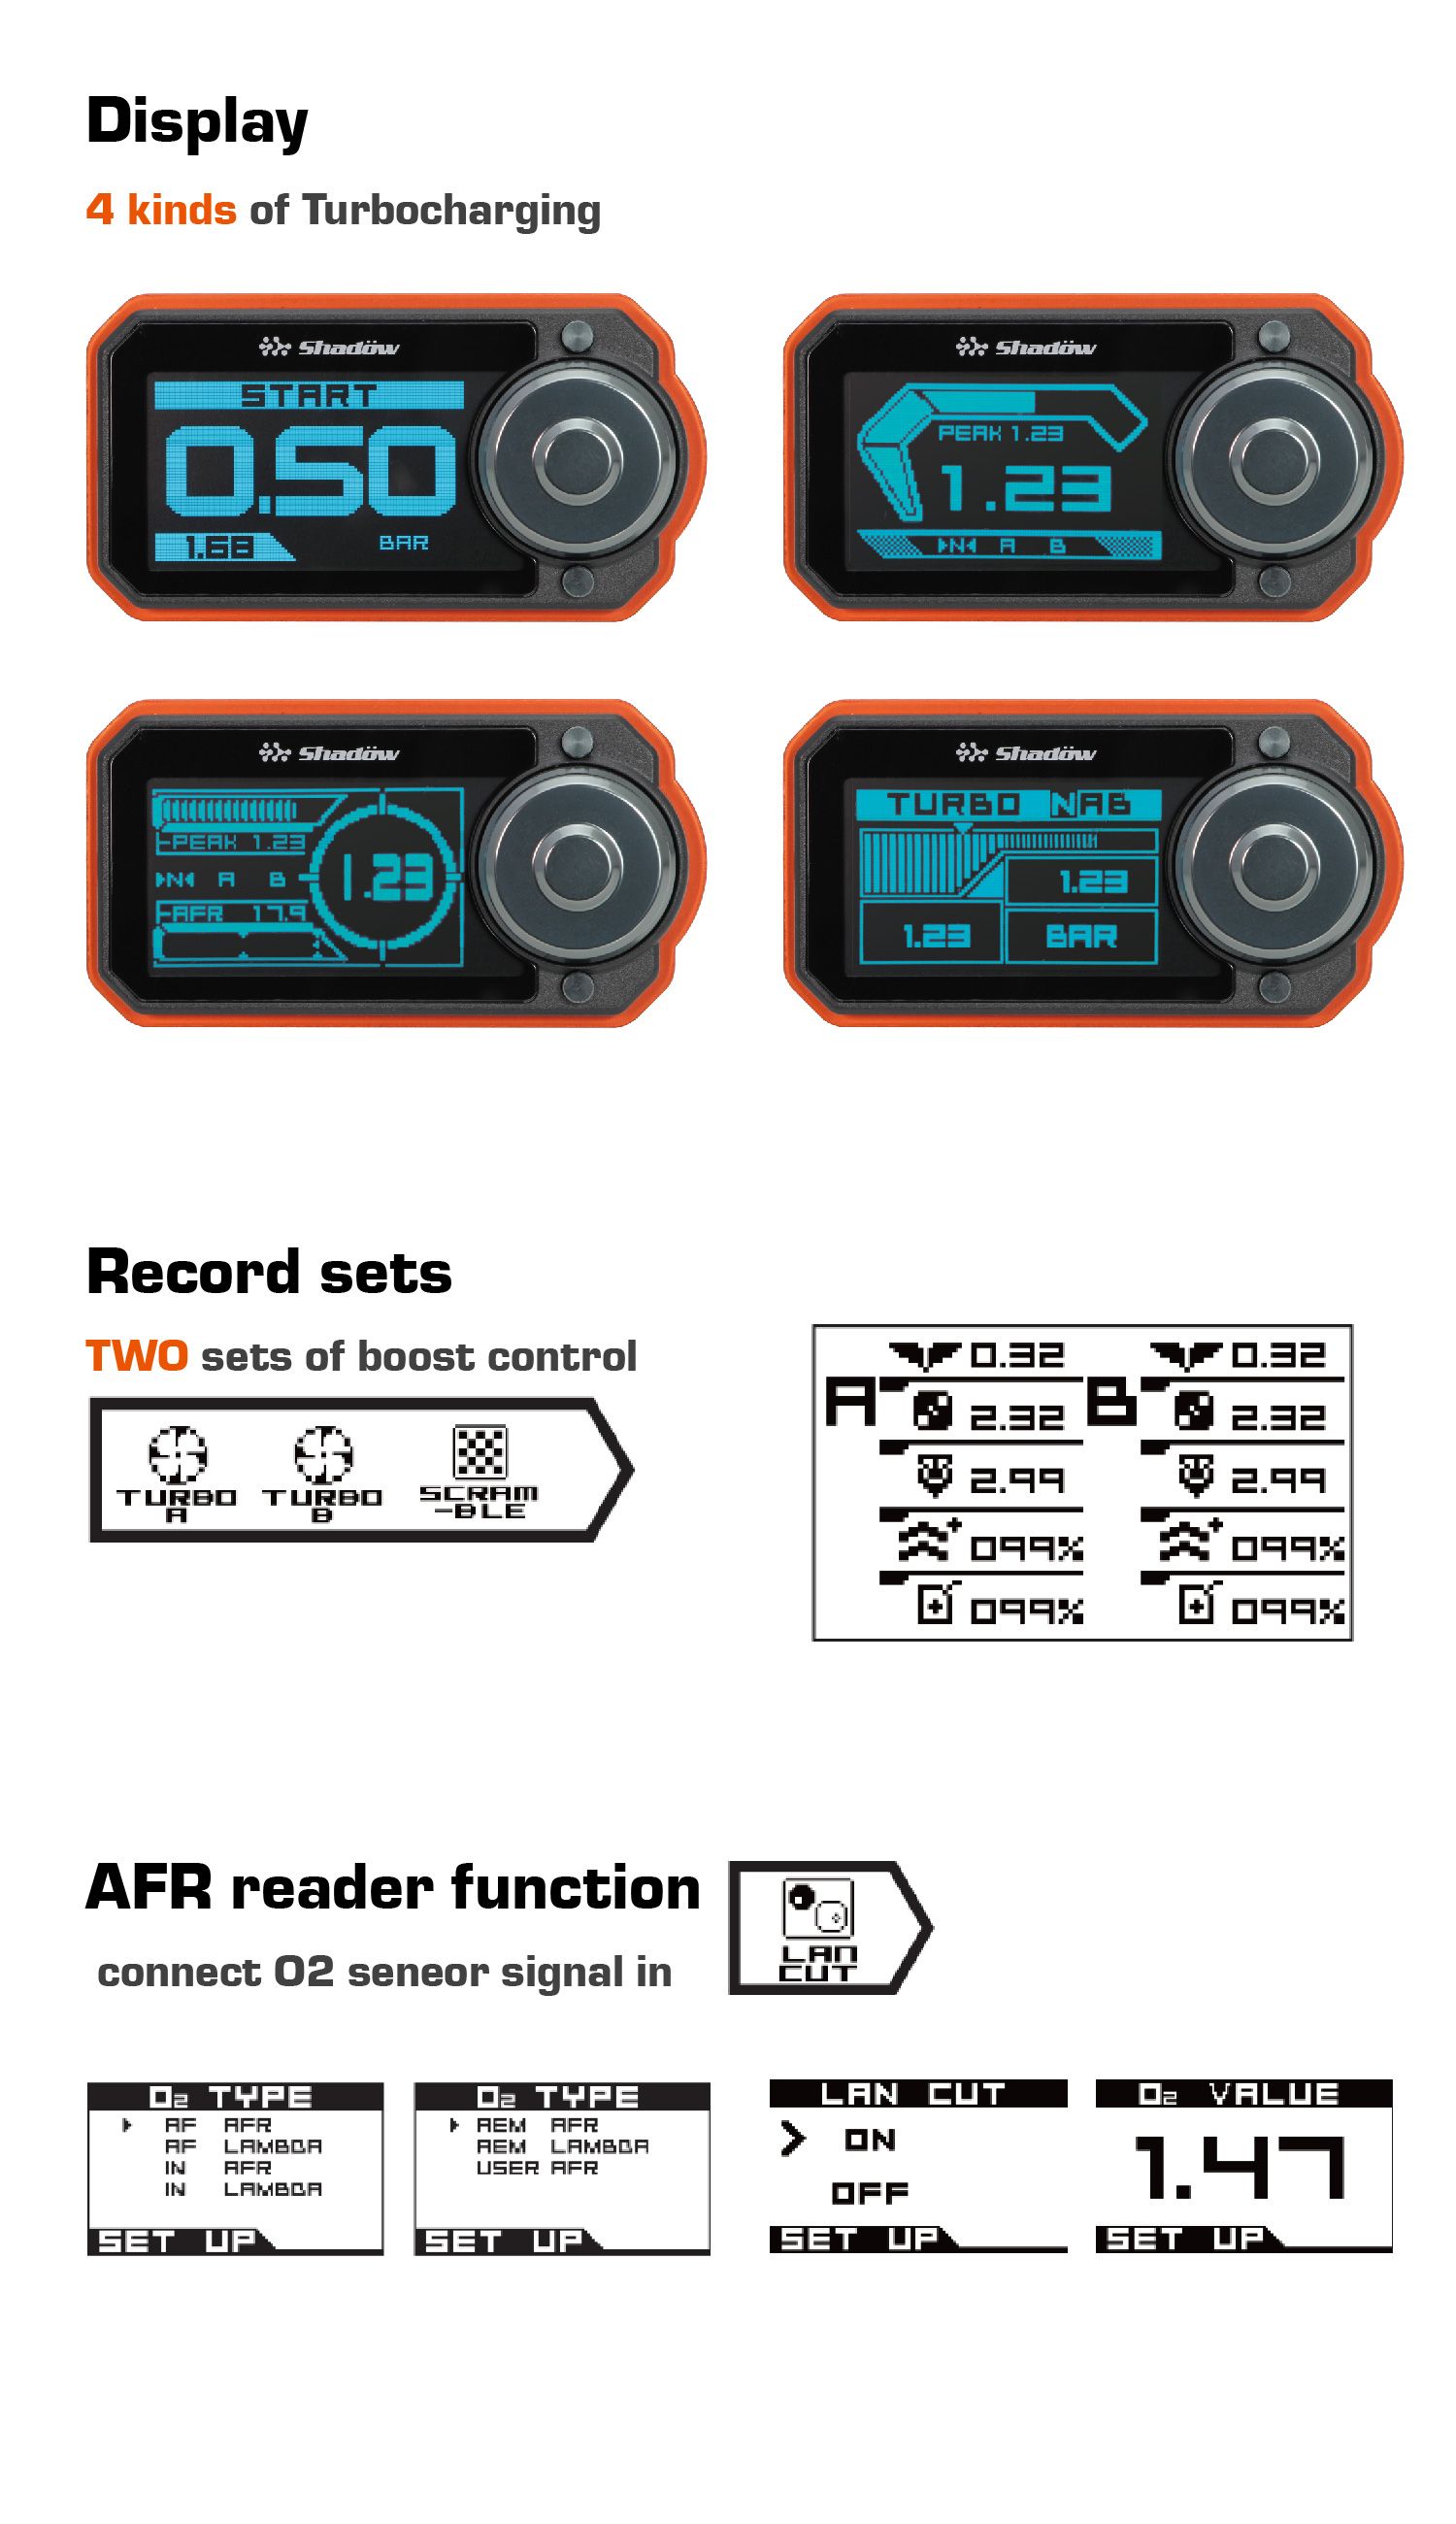 4 tipos de Turbocharging, DOIS conjuntos de controle de reforço, função leitor AFR.